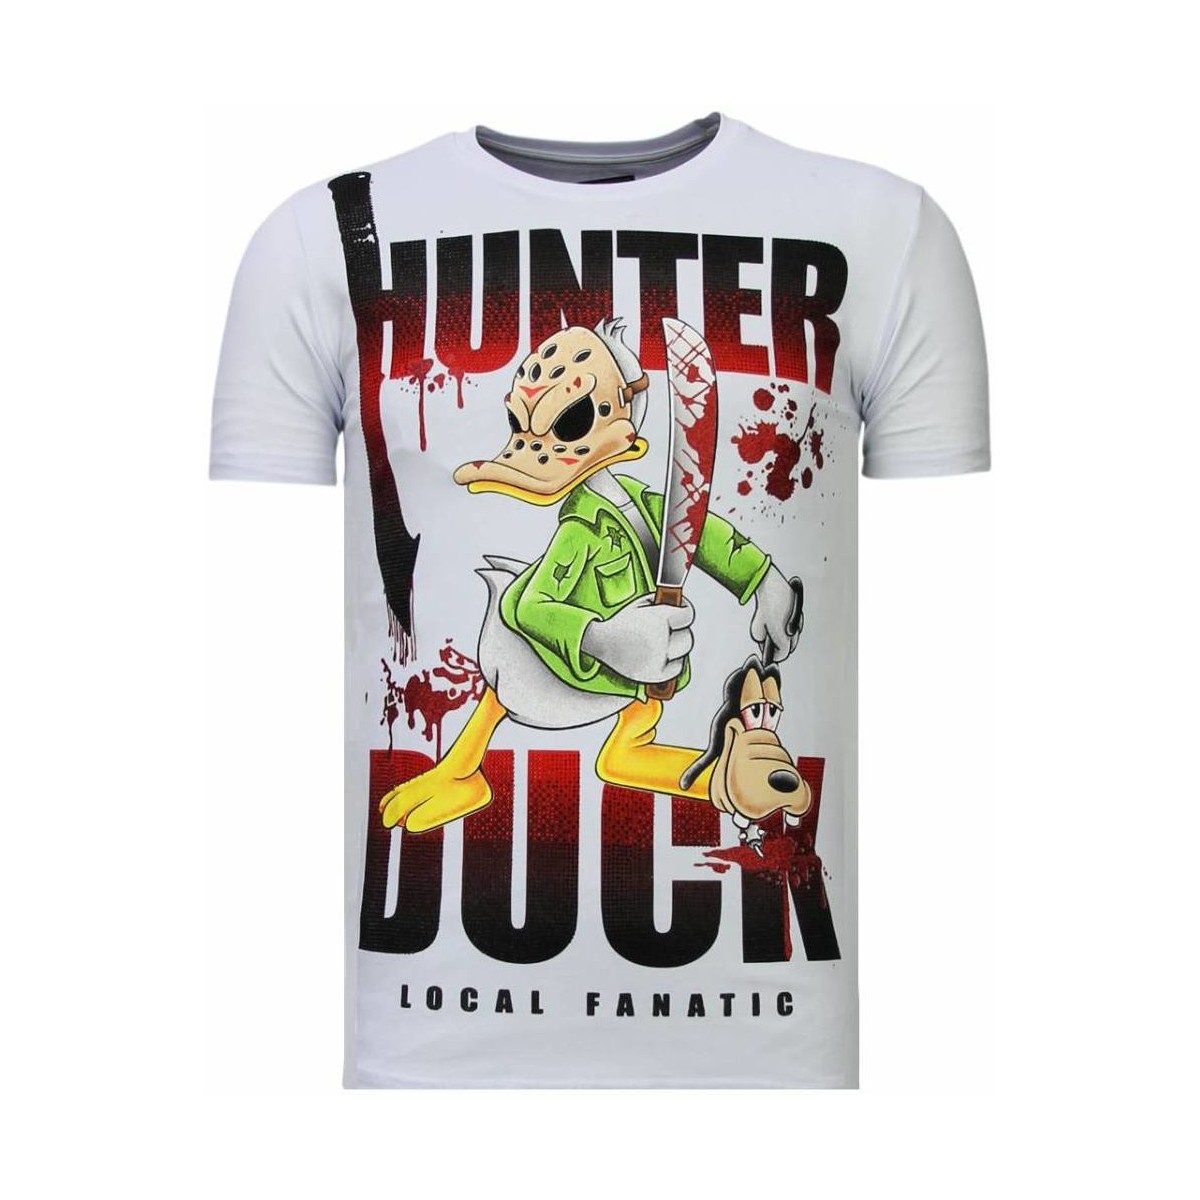 textil Herr T-shirts Local Fanatic Hunter Duck Rhinestone W Vit